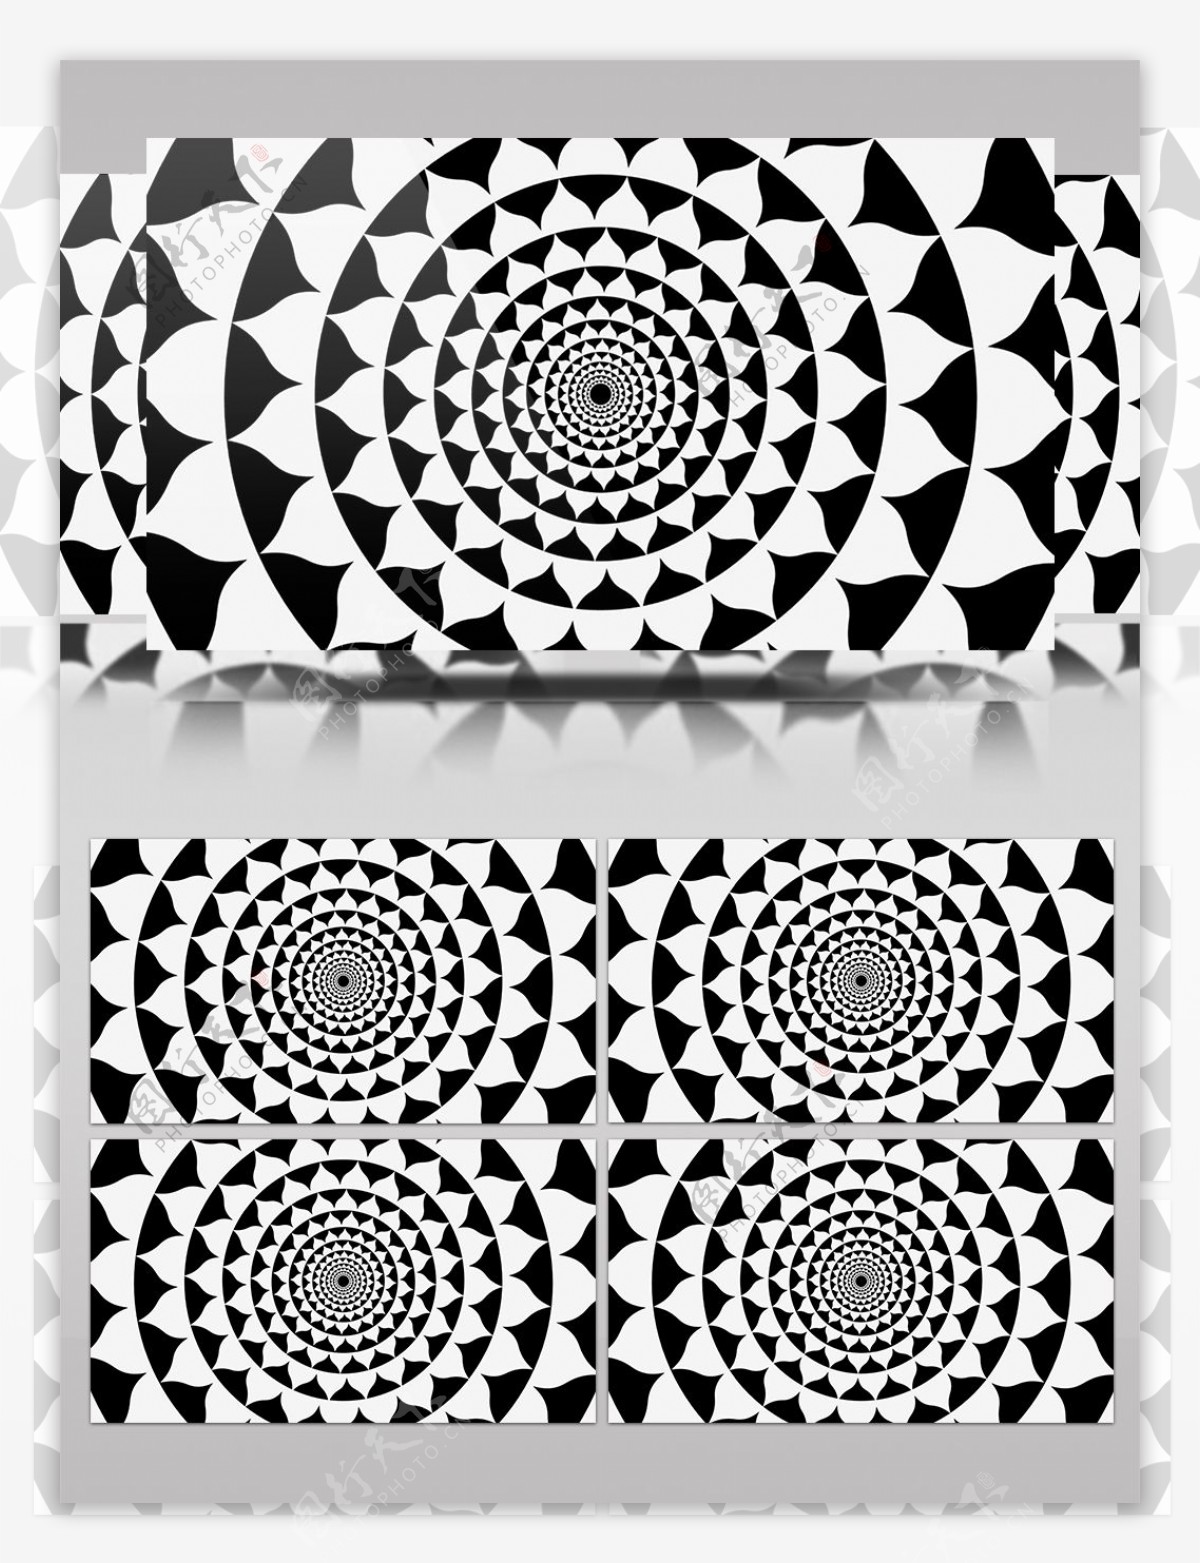 黑白圆圈花瓣形状视频素材